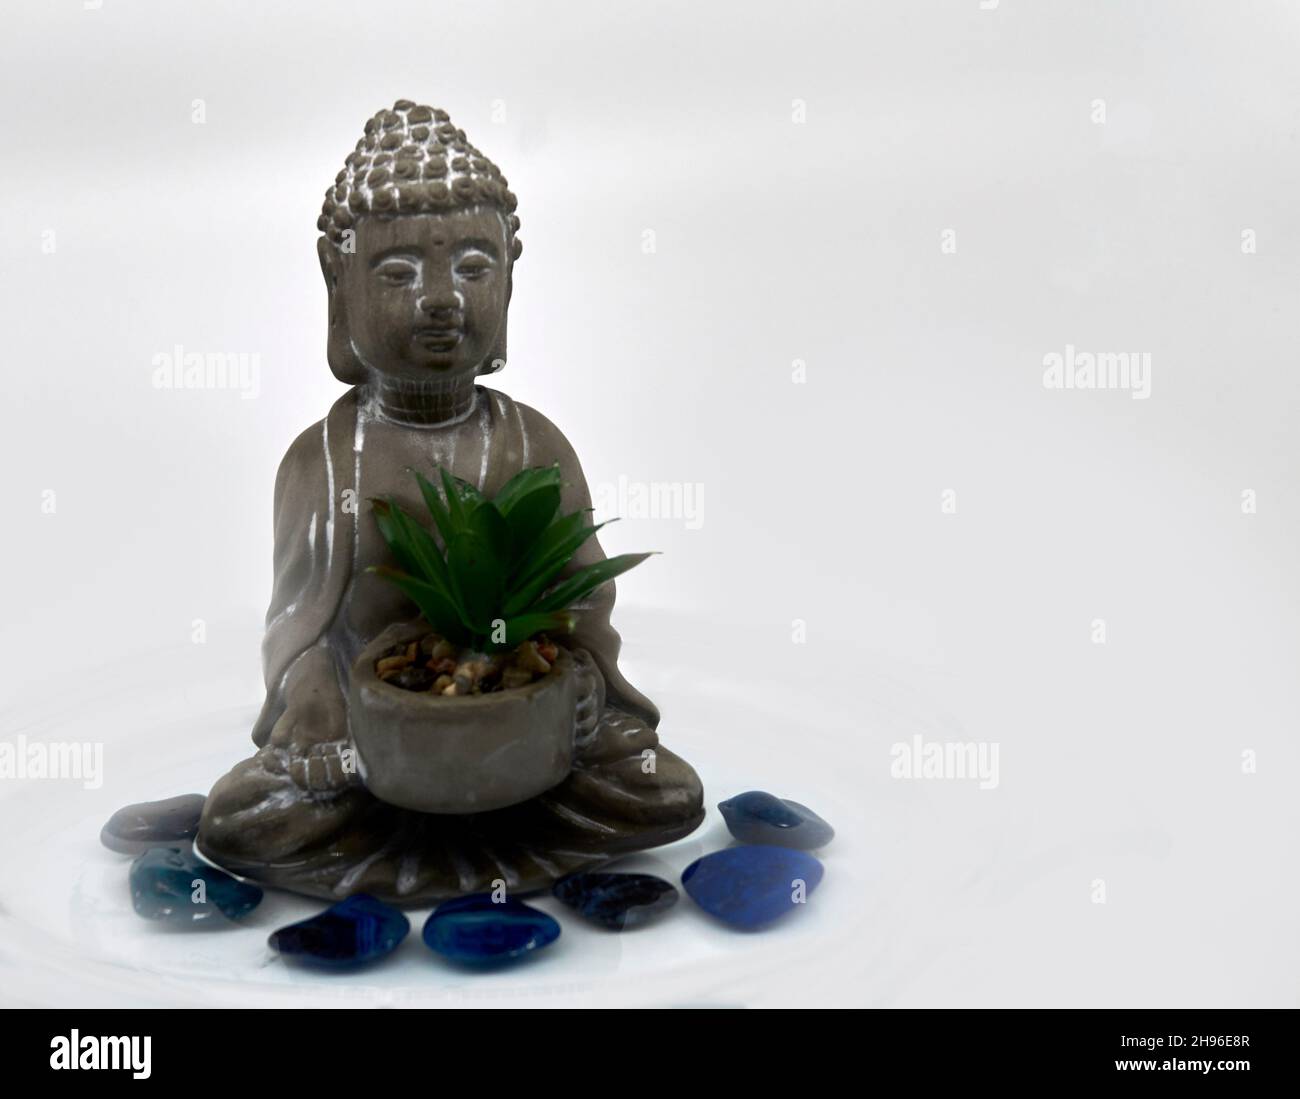 Un pequeño Buda gris con un suculento rodeado de siete piedras azules semi-preciosas en el agua. Fondo blanco. Foto de stock